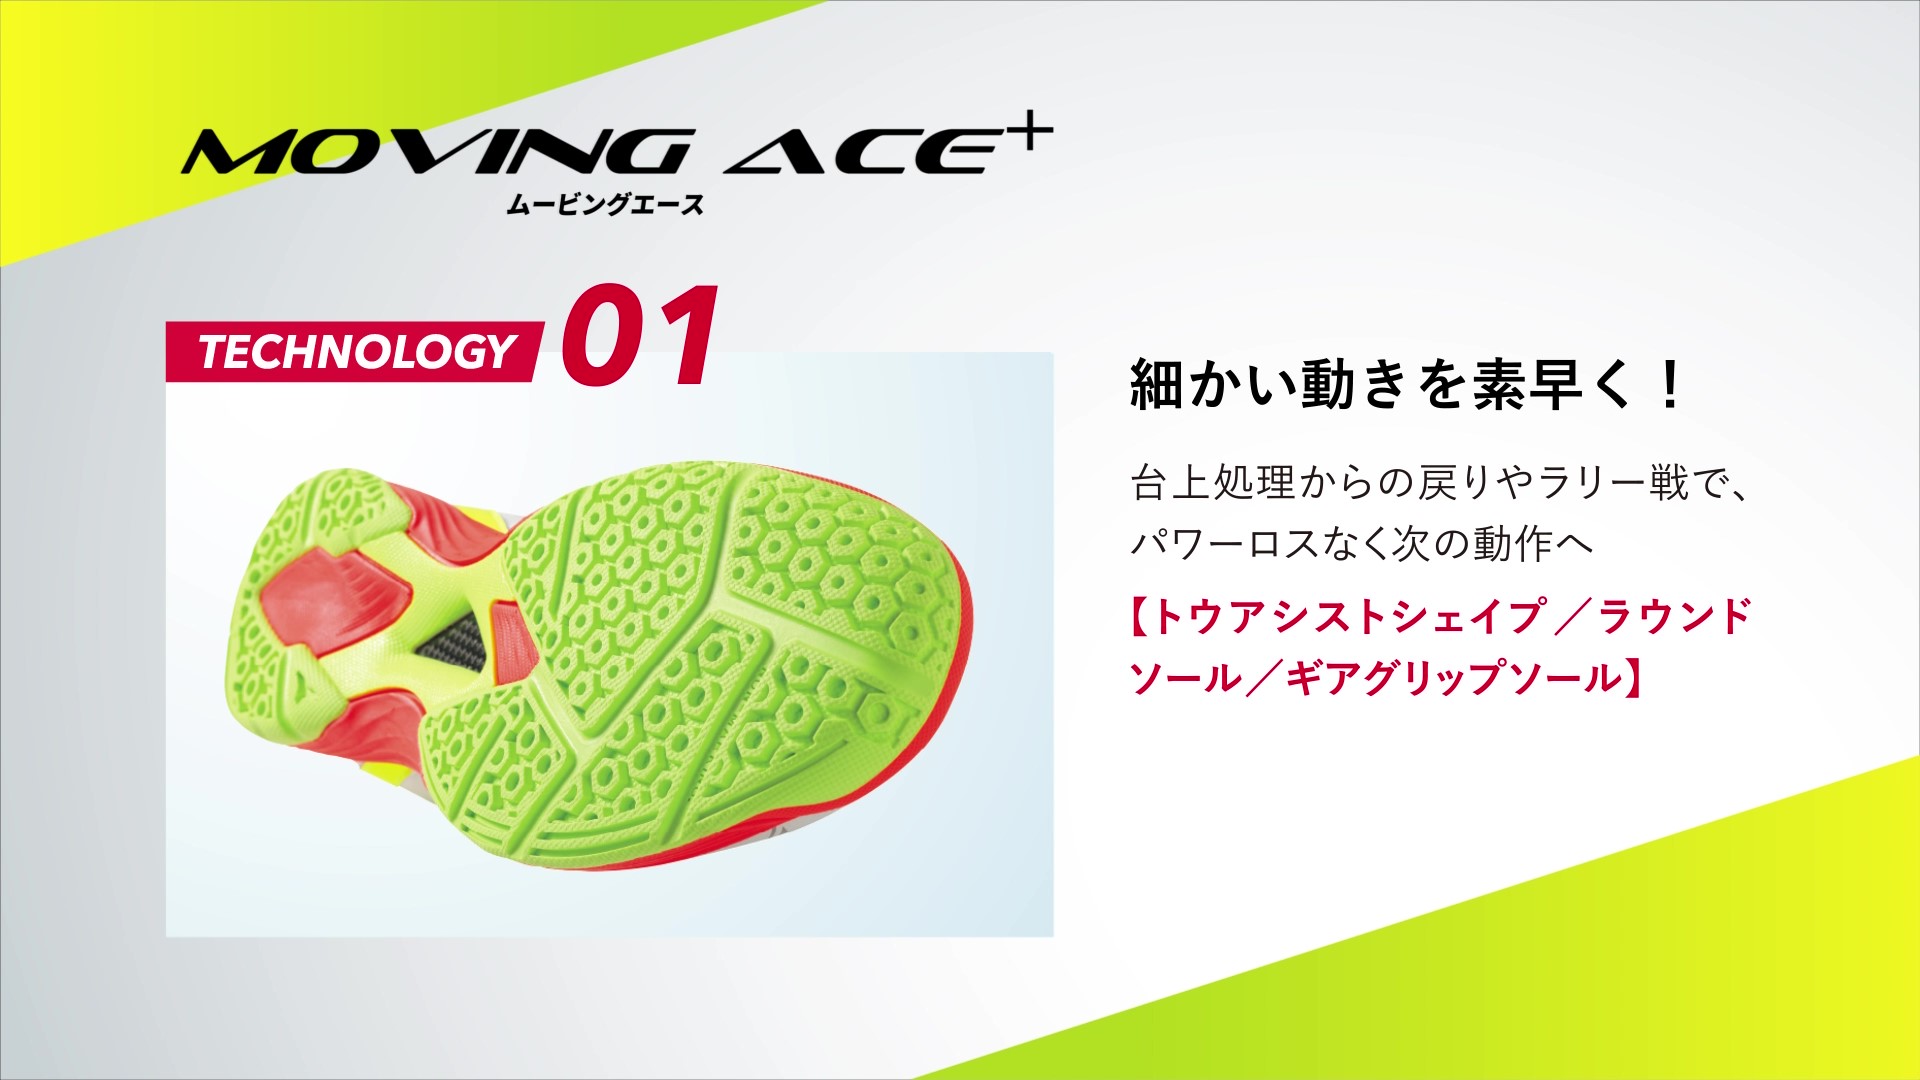 ムービングエース(MOVINGACE+) | Nittaku(ニッタク) 日本卓球